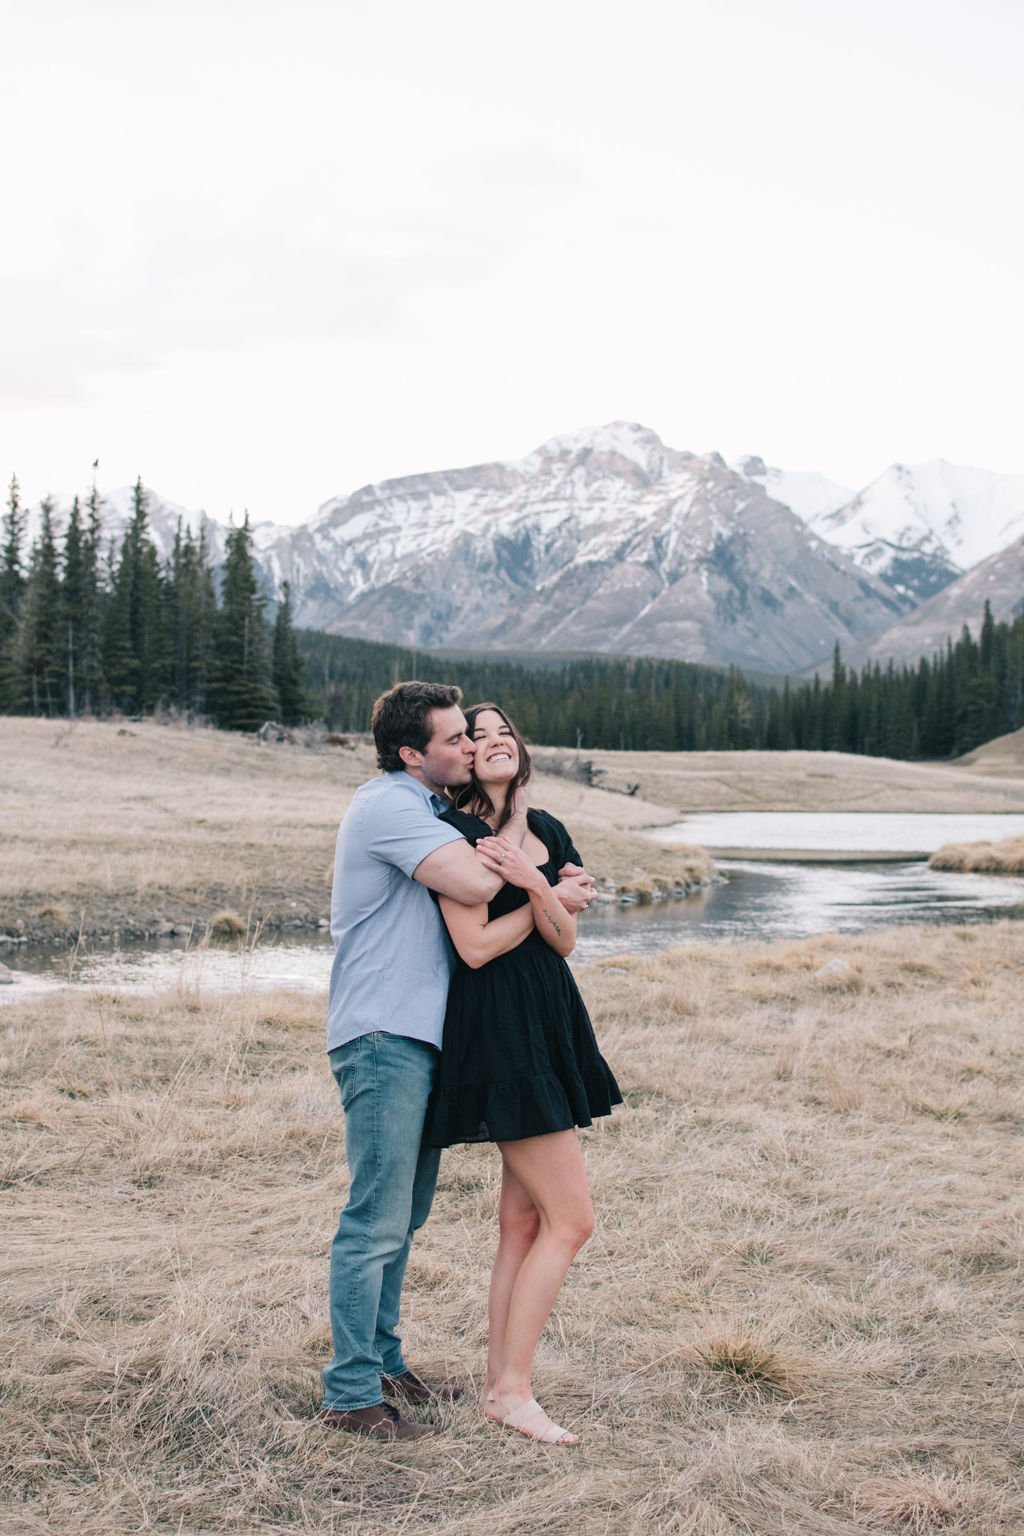 Joyous destination engagement session in Banff National park photographed by Niagara wedding photographers, Ugo Photography